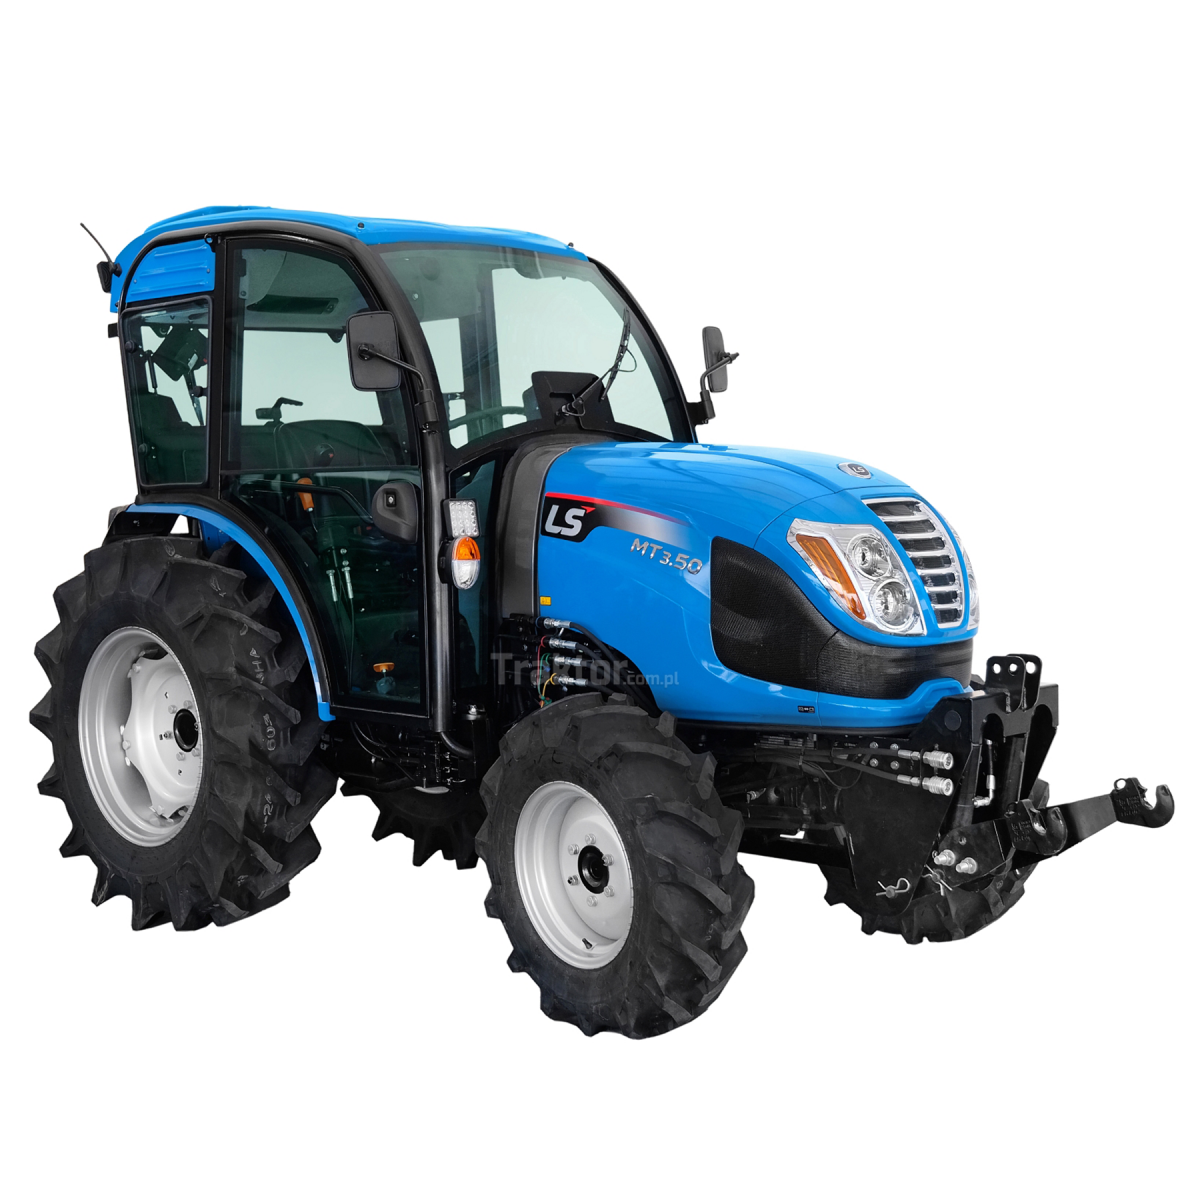 Traktor LS MT3.50 MEC 4x4 - 47 HP / CAB s klimatizací + přední tříbodový závěs pro traktor Premium 4FARMER